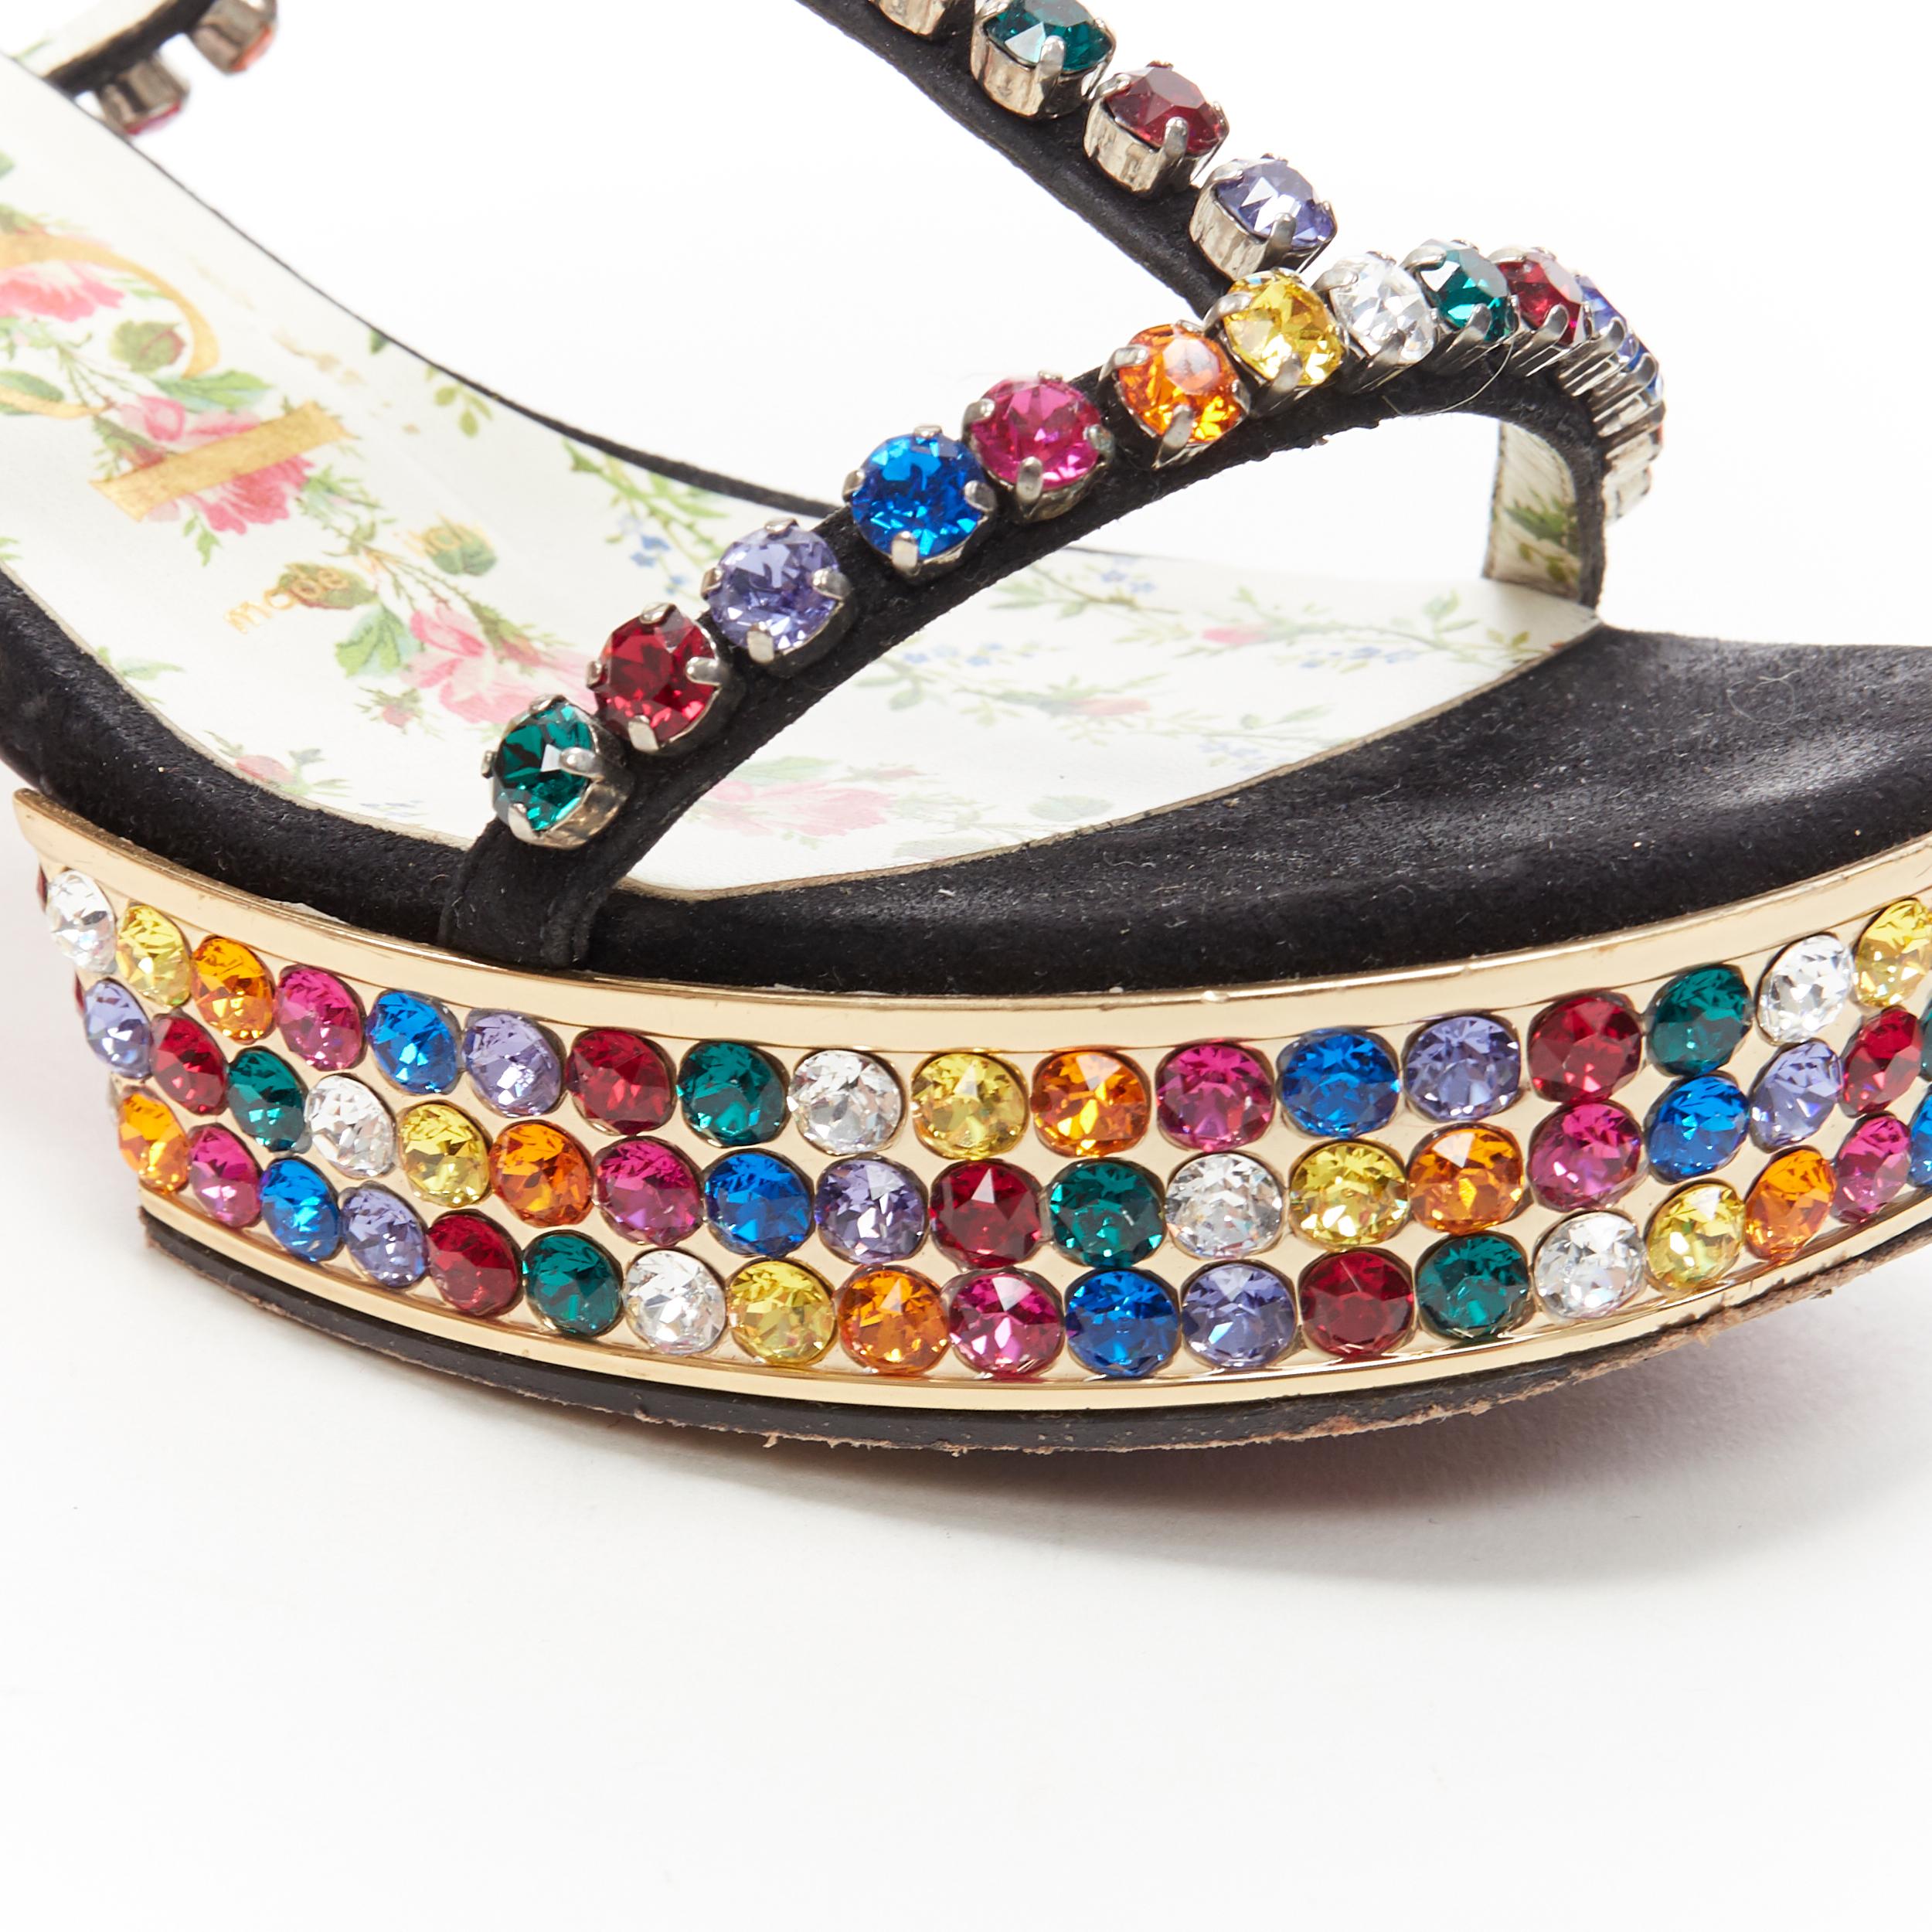 Women's GUCCI Michele Mira rainbow jewel strass crystal block heel T-strap sandal EU35.5